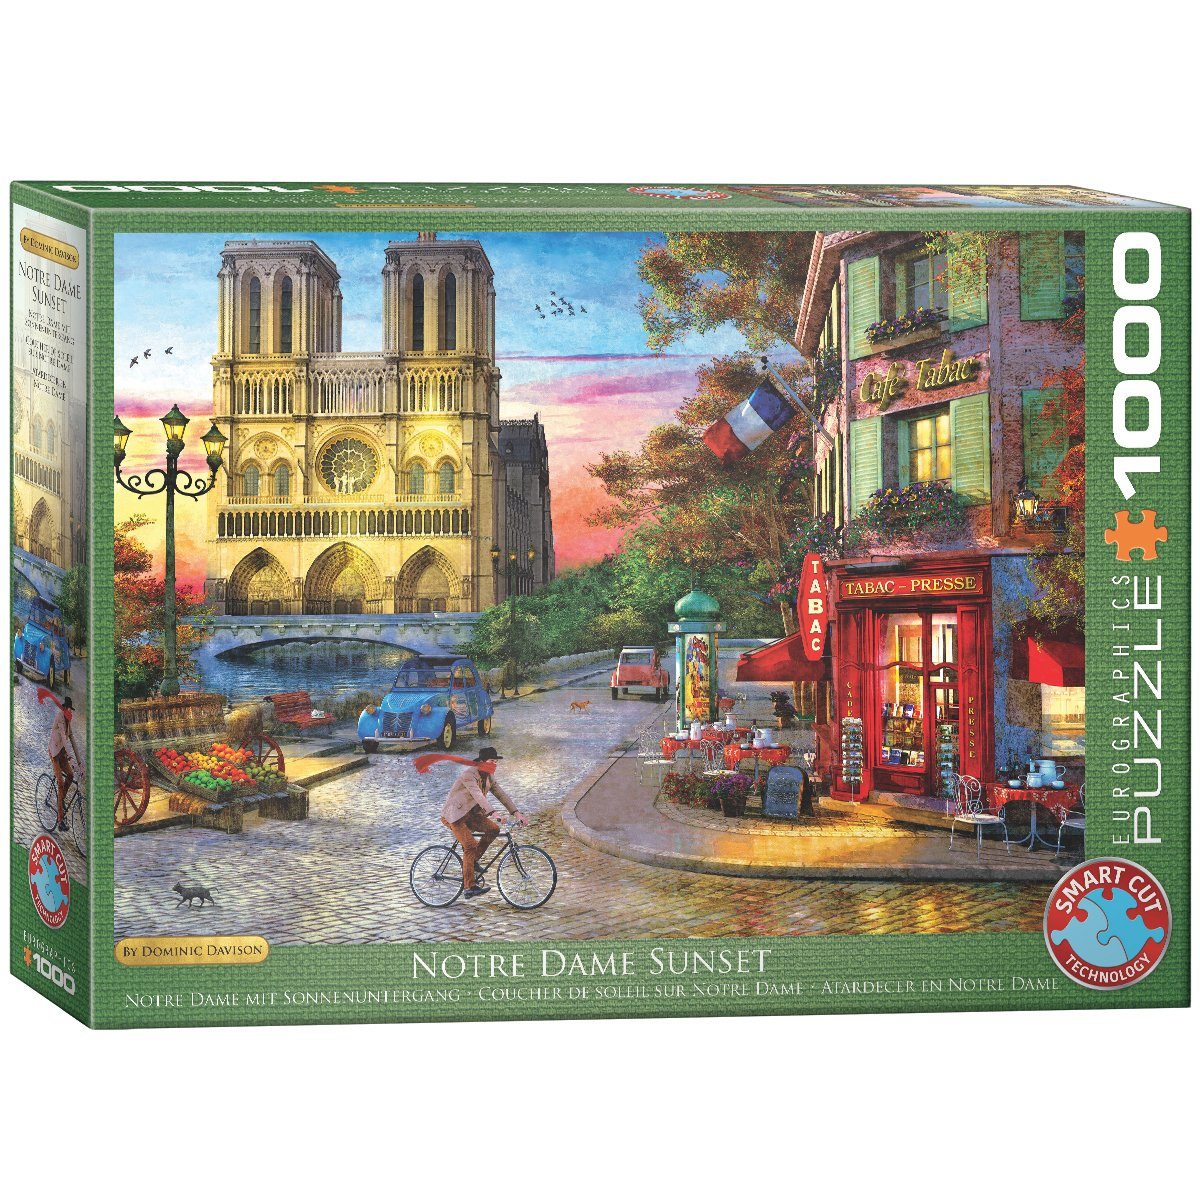 EUROGRAPHICS Puzzle EuroGraphics 6000-5530 Notre Dame Dominic Davison, 1000 Puzzleteile